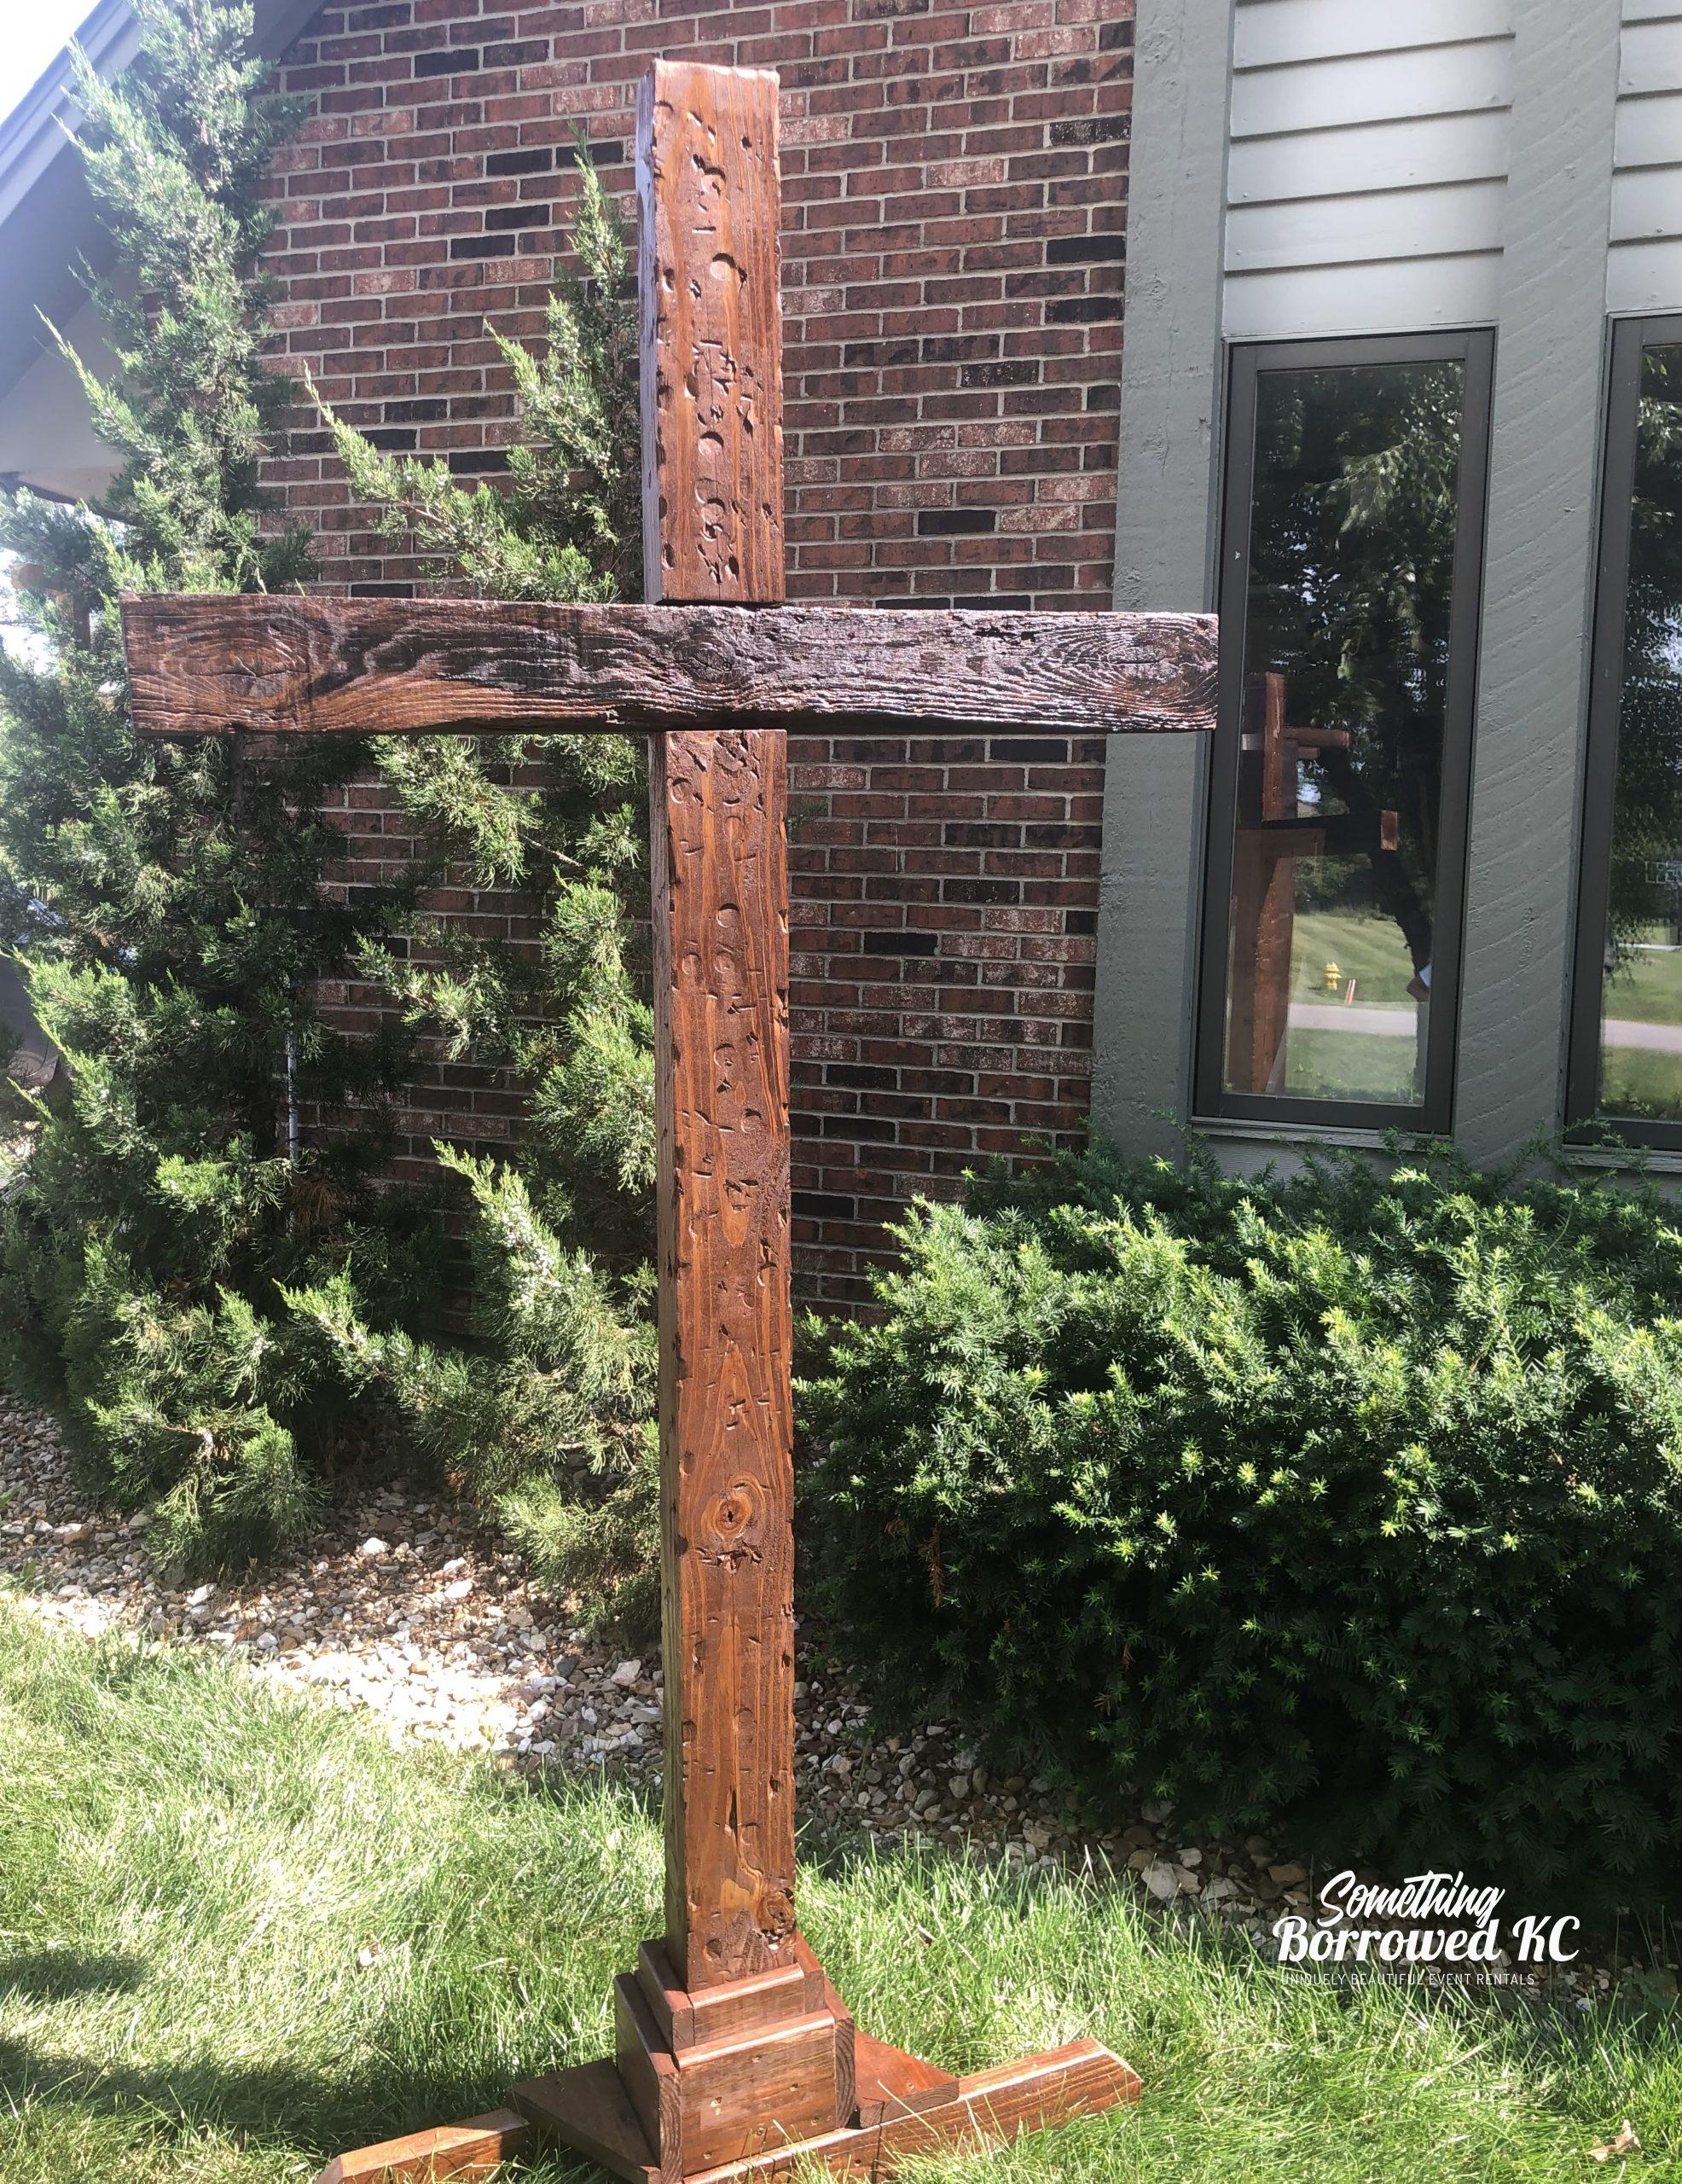 wooden christian cross